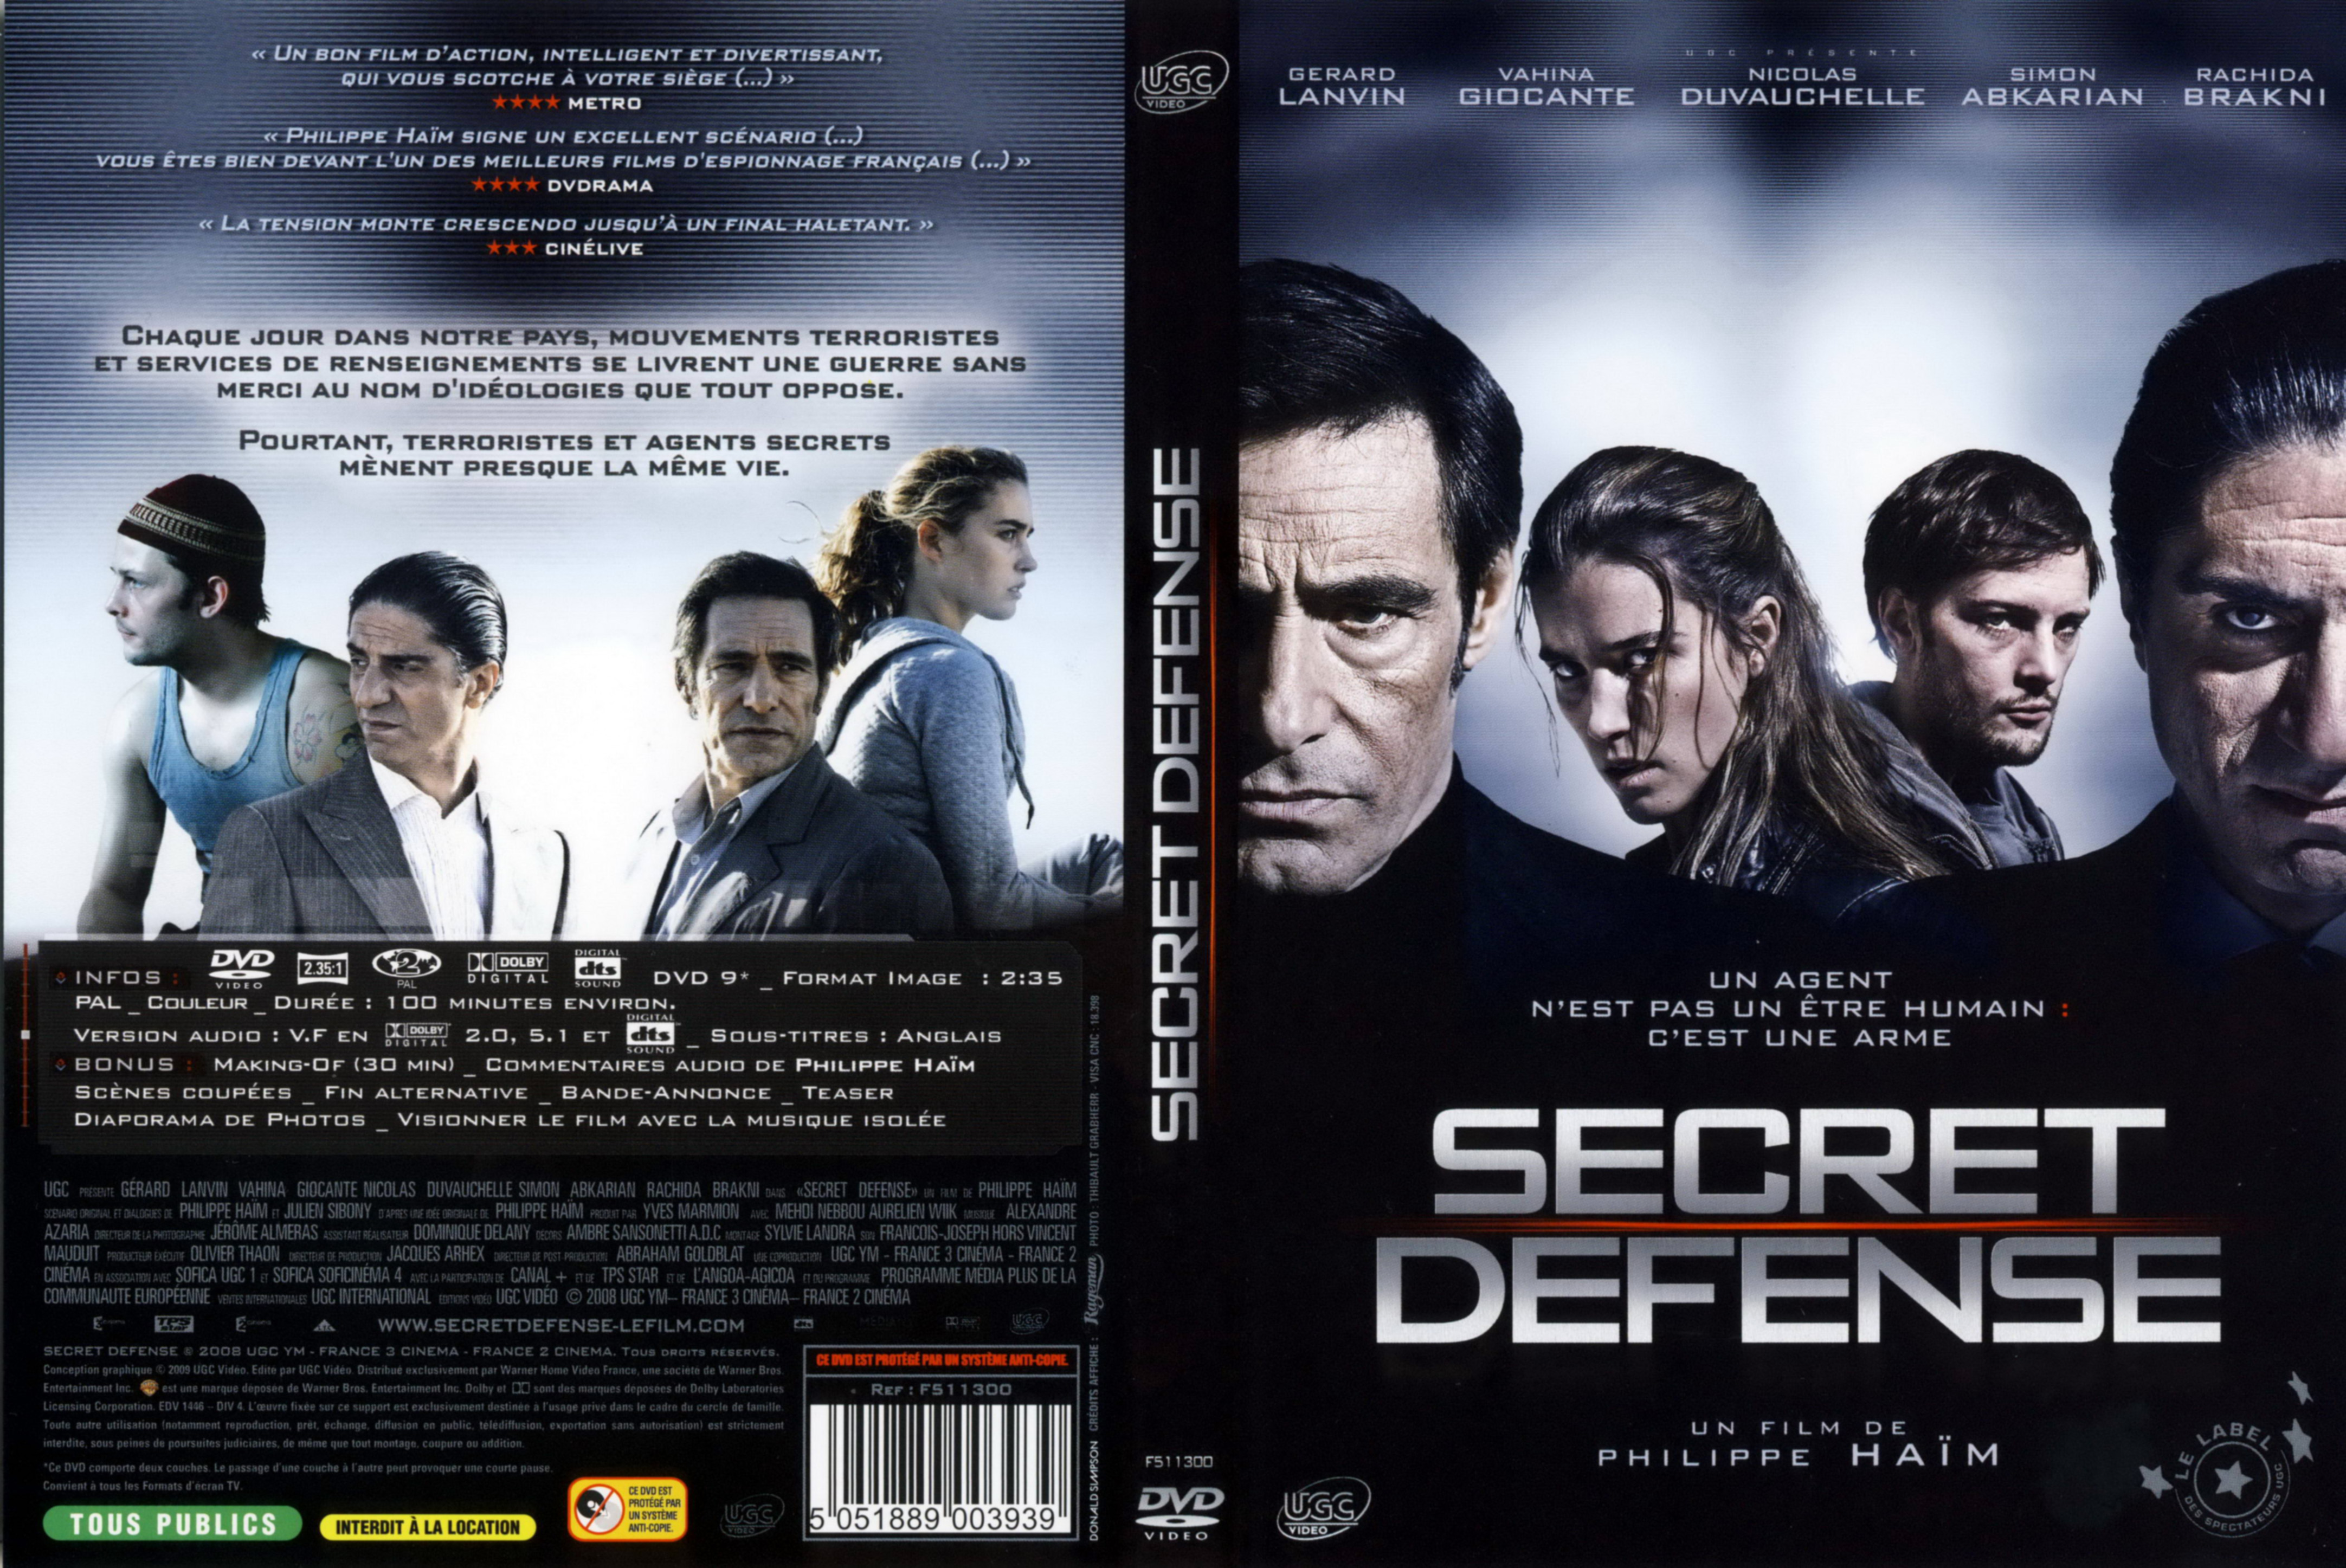 Jaquette DVD Secret defense (2008)